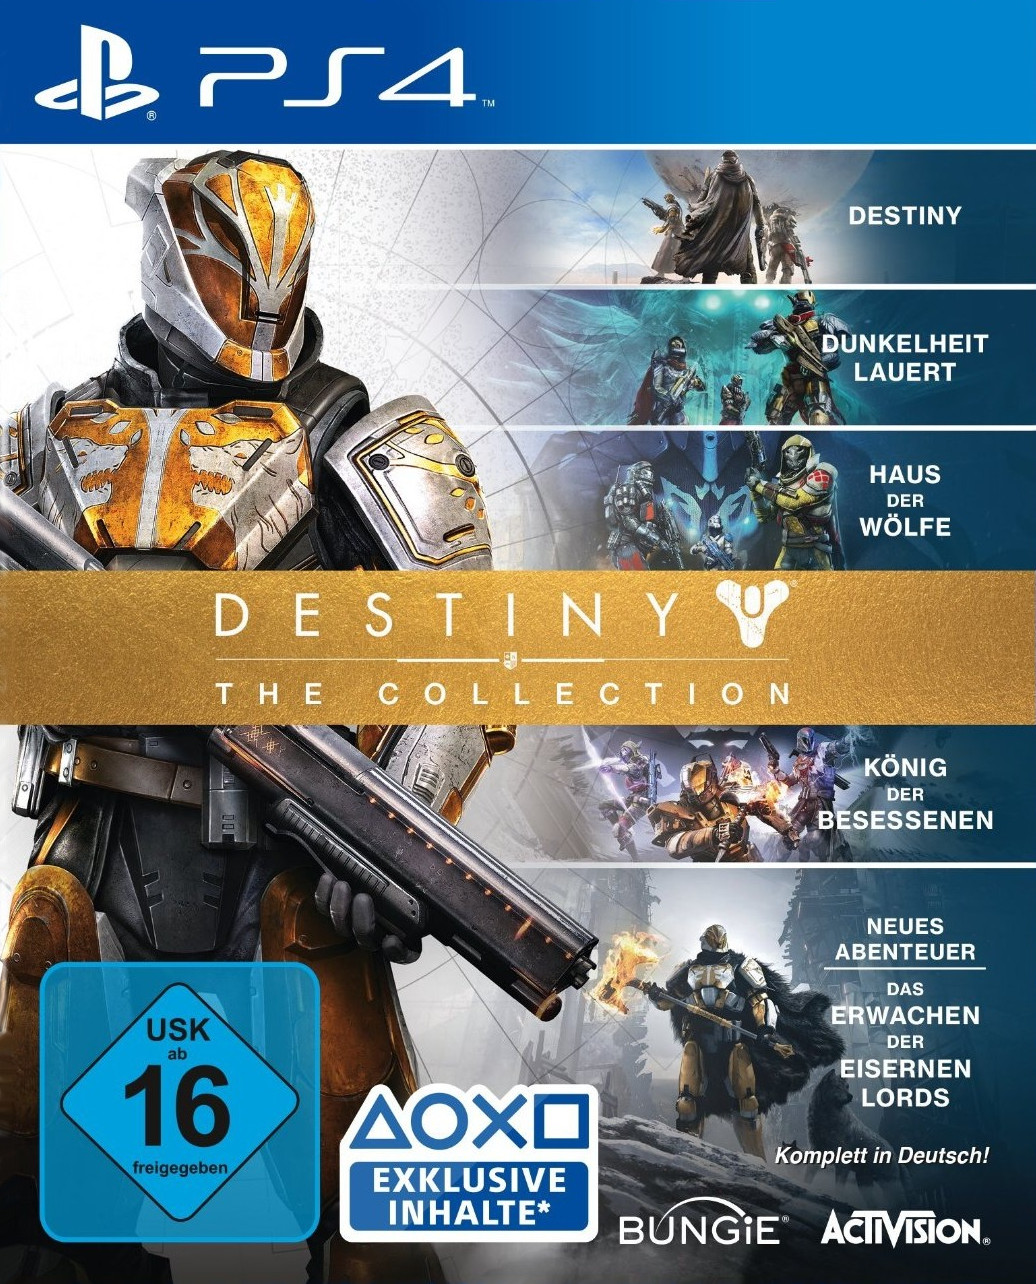 Destiny 2 collection. Destiny сколько стоит. Destiny какие книги по игре. Destiny перевод на русский.